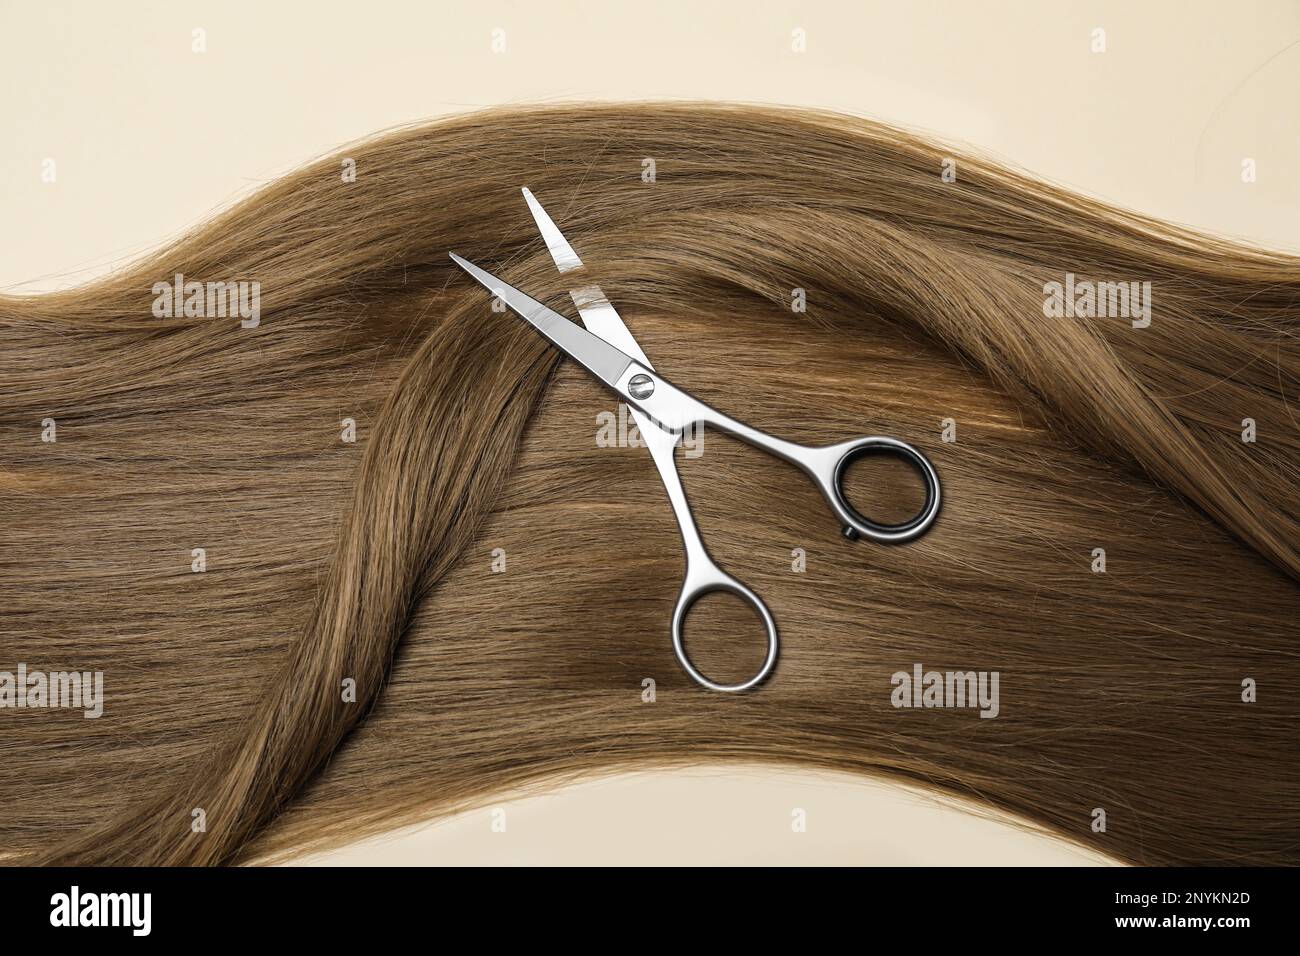 Professionelle Friseurschere mit dunkelblondem Haar auf beigefarbenem Hintergrund, Draufsicht. Haarschnitt-Werkzeug Stockfoto